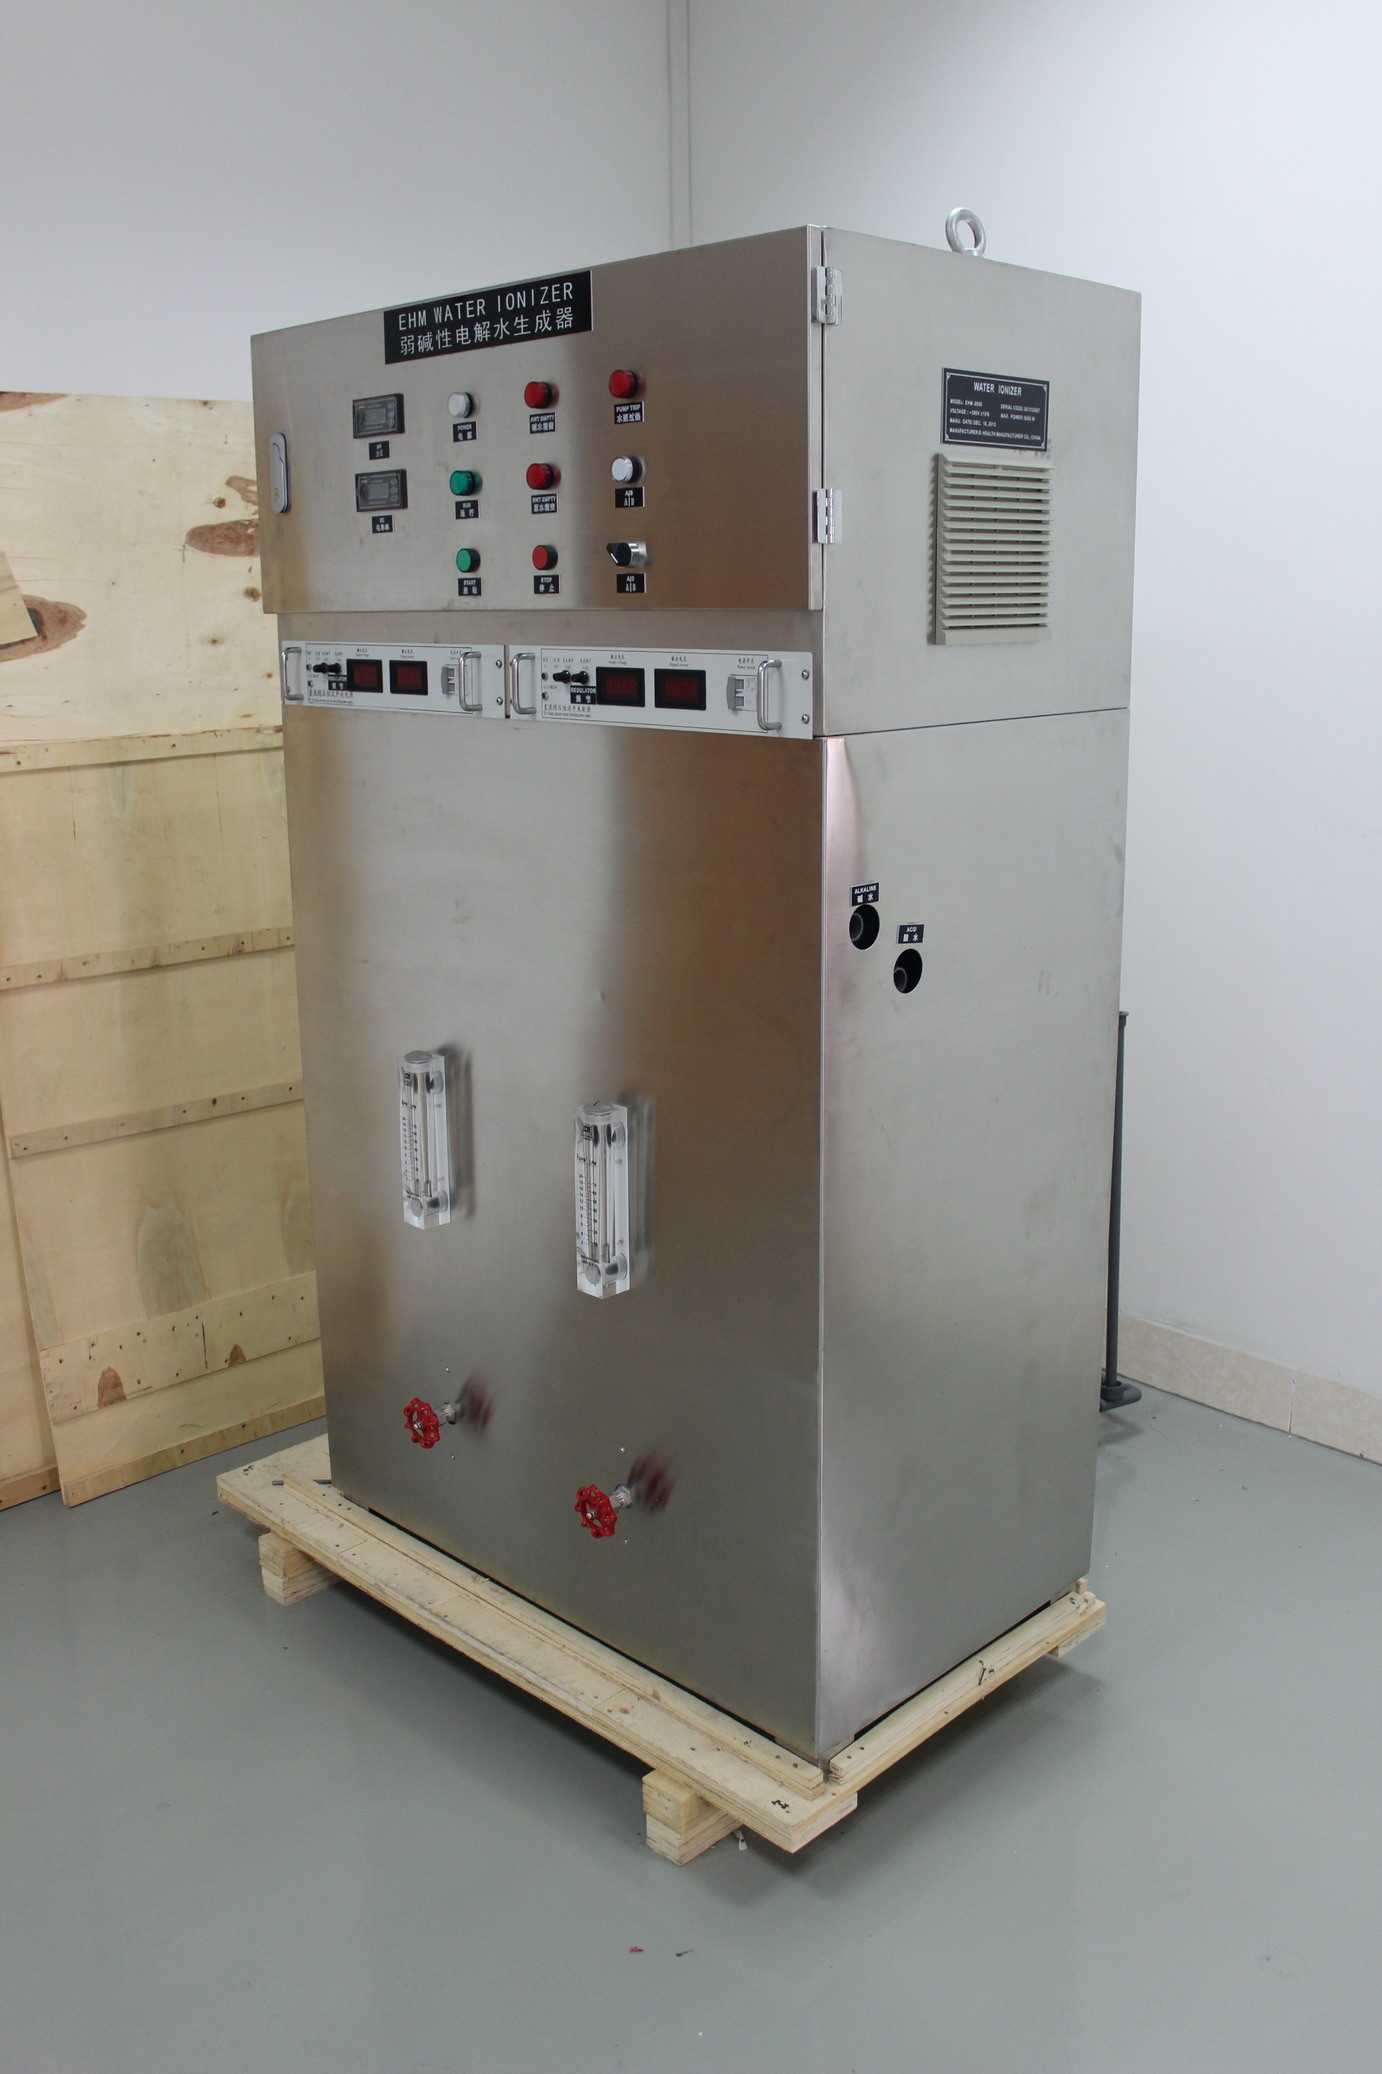 বৃহৎ ক্ষমতা জল ionizer শিল্প জল চিকিত্সা সিস্টেম মডেল EHM-1000 সঙ্গে incoporating